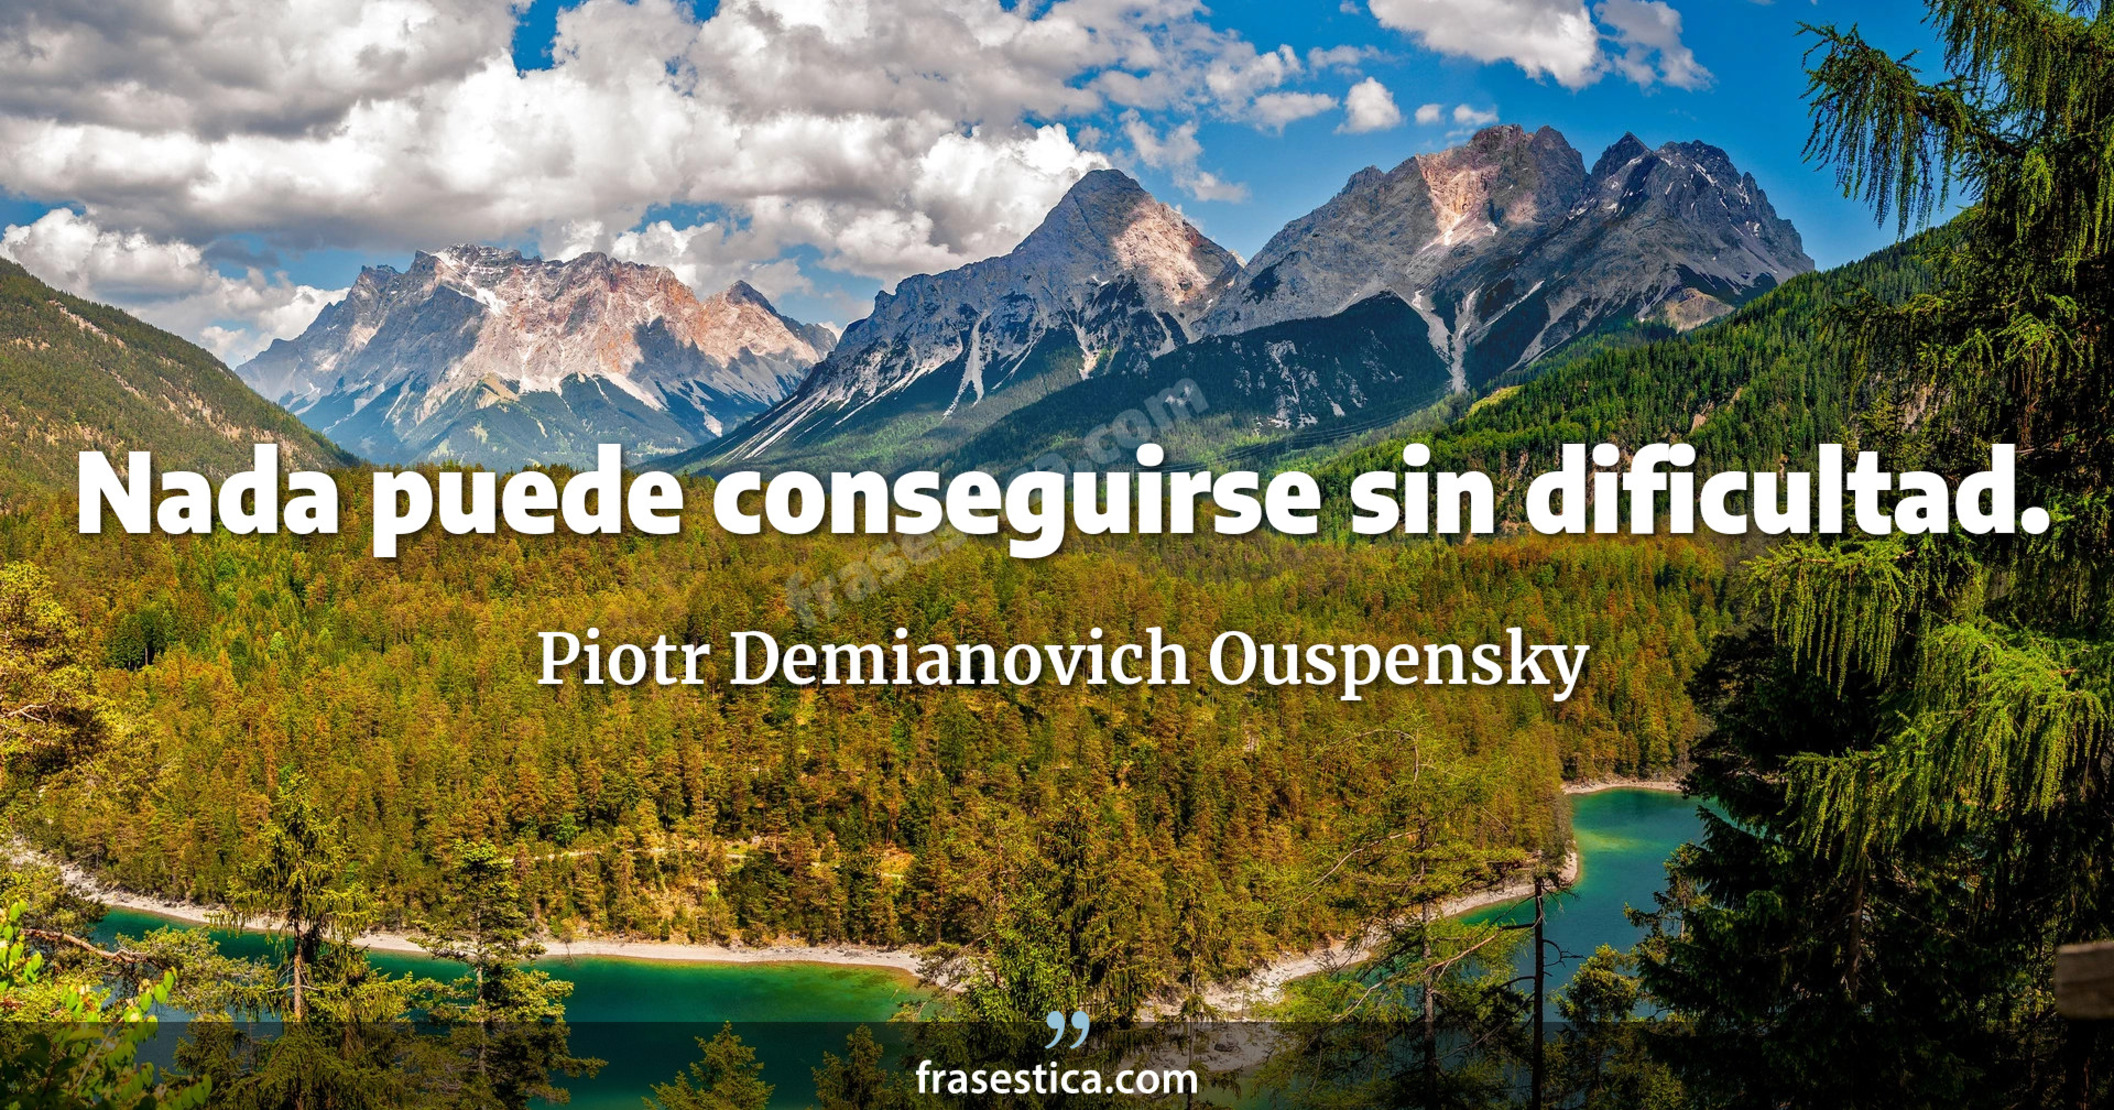 Nada puede conseguirse sin dificultad. - Piotr Demianovich Ouspensky